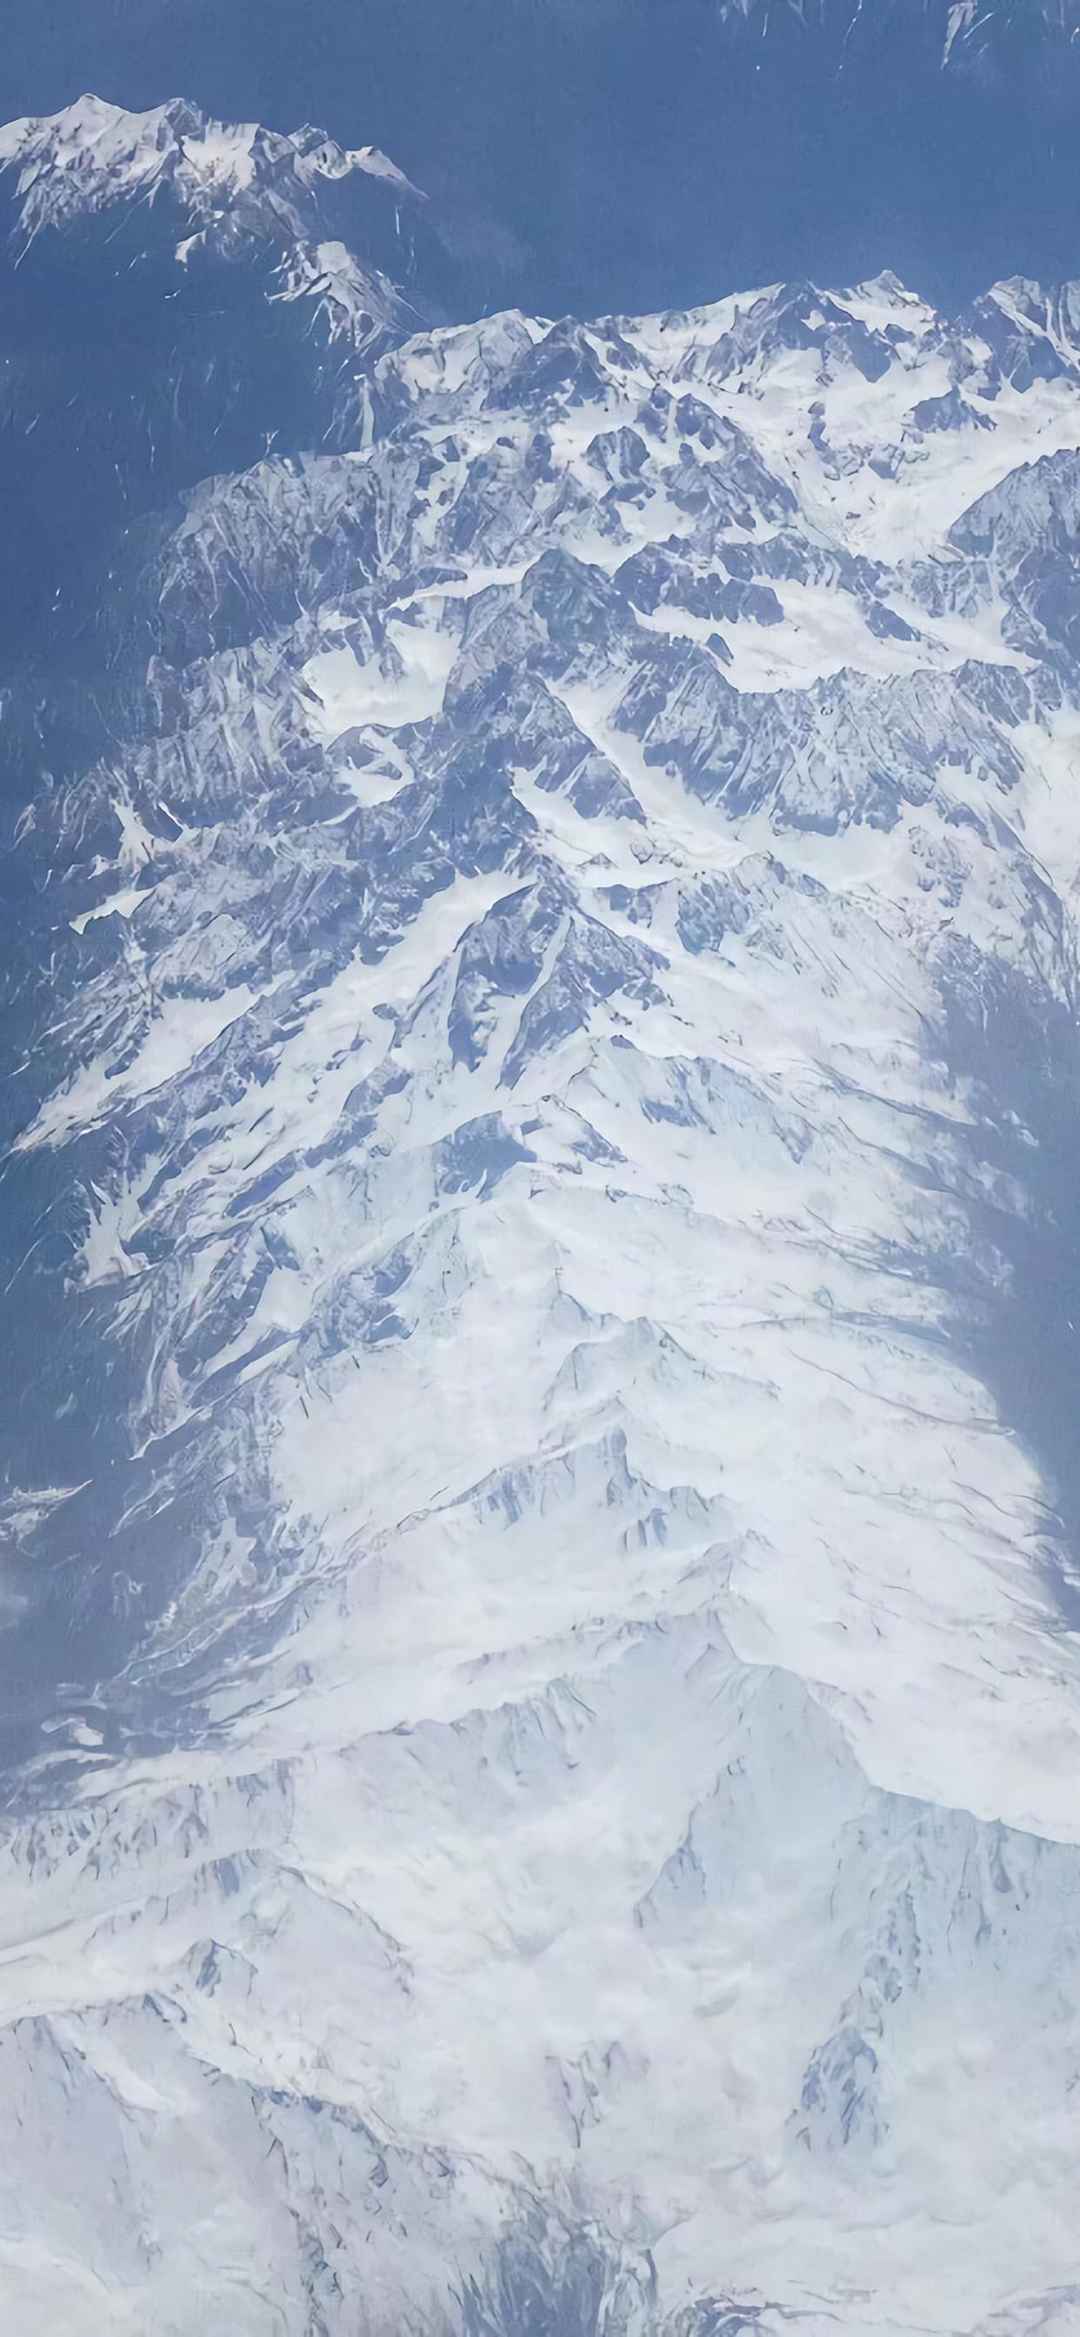 大气磅礴的唯美雪山风景手机壁纸-